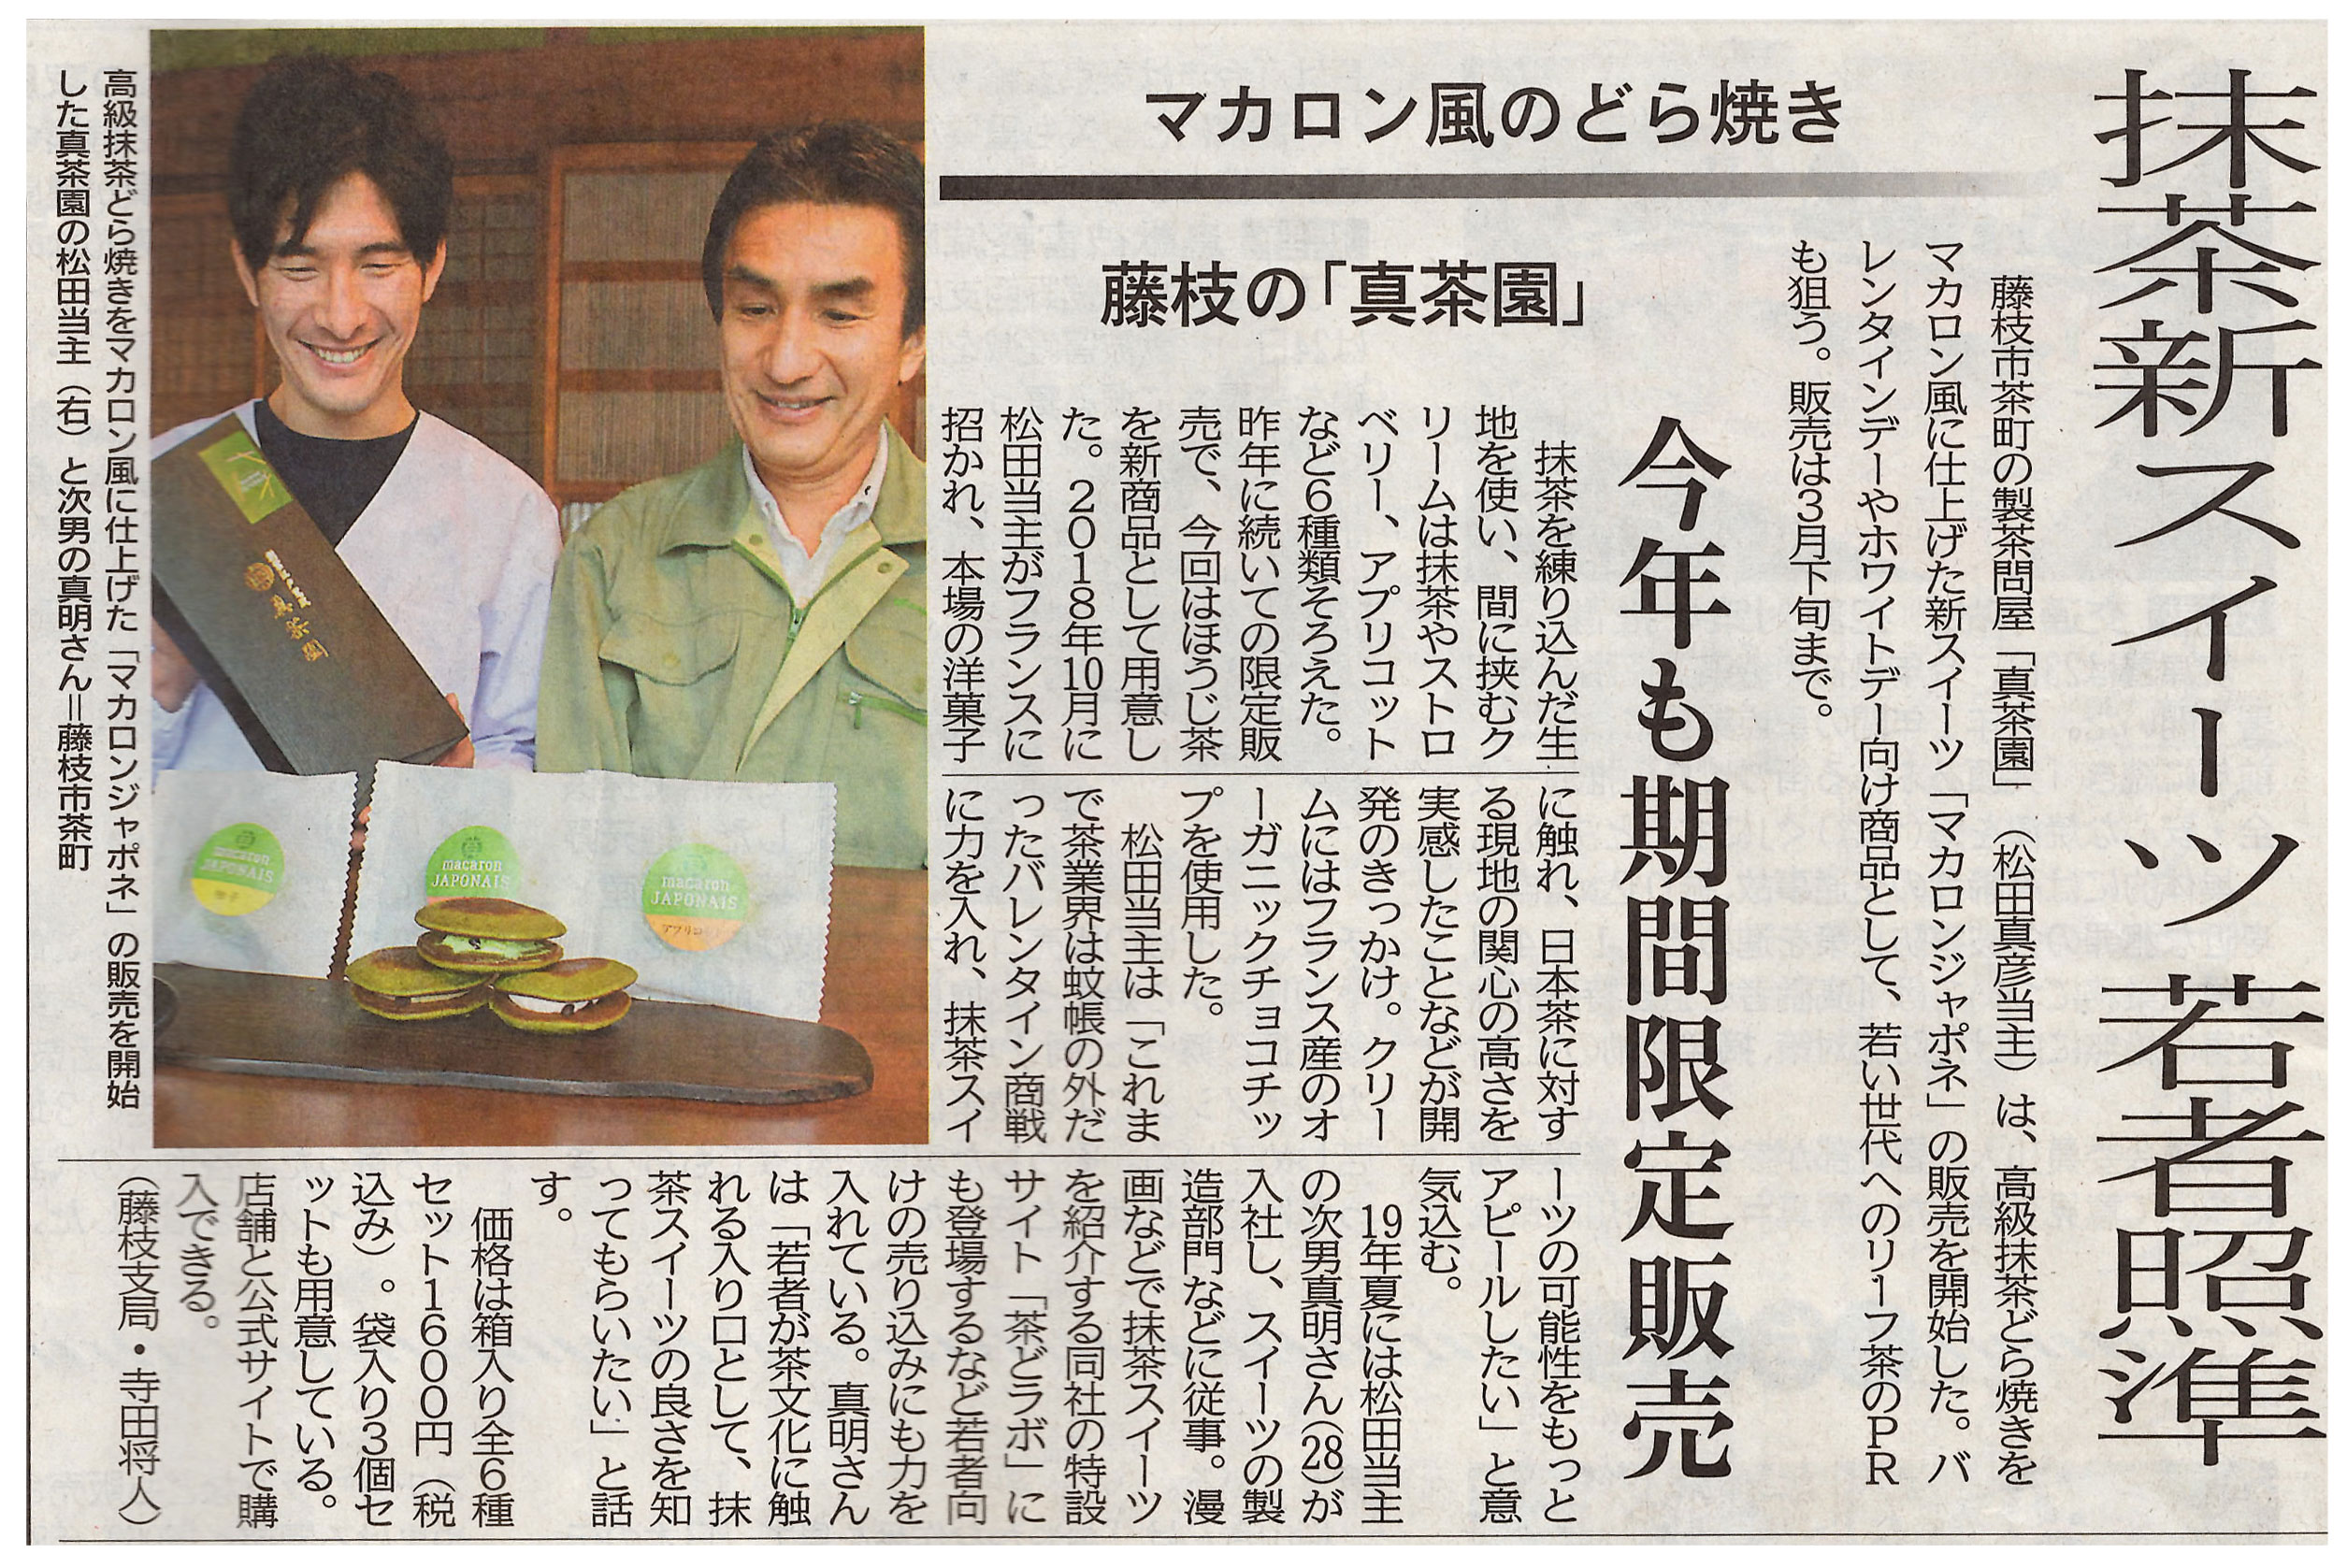 2019年1月 静岡新聞　若い世代へのリーフ茶のPRの狙う新スイーツ、マカロン風のどらやき「マカロンジャポネ」について掲載されました。